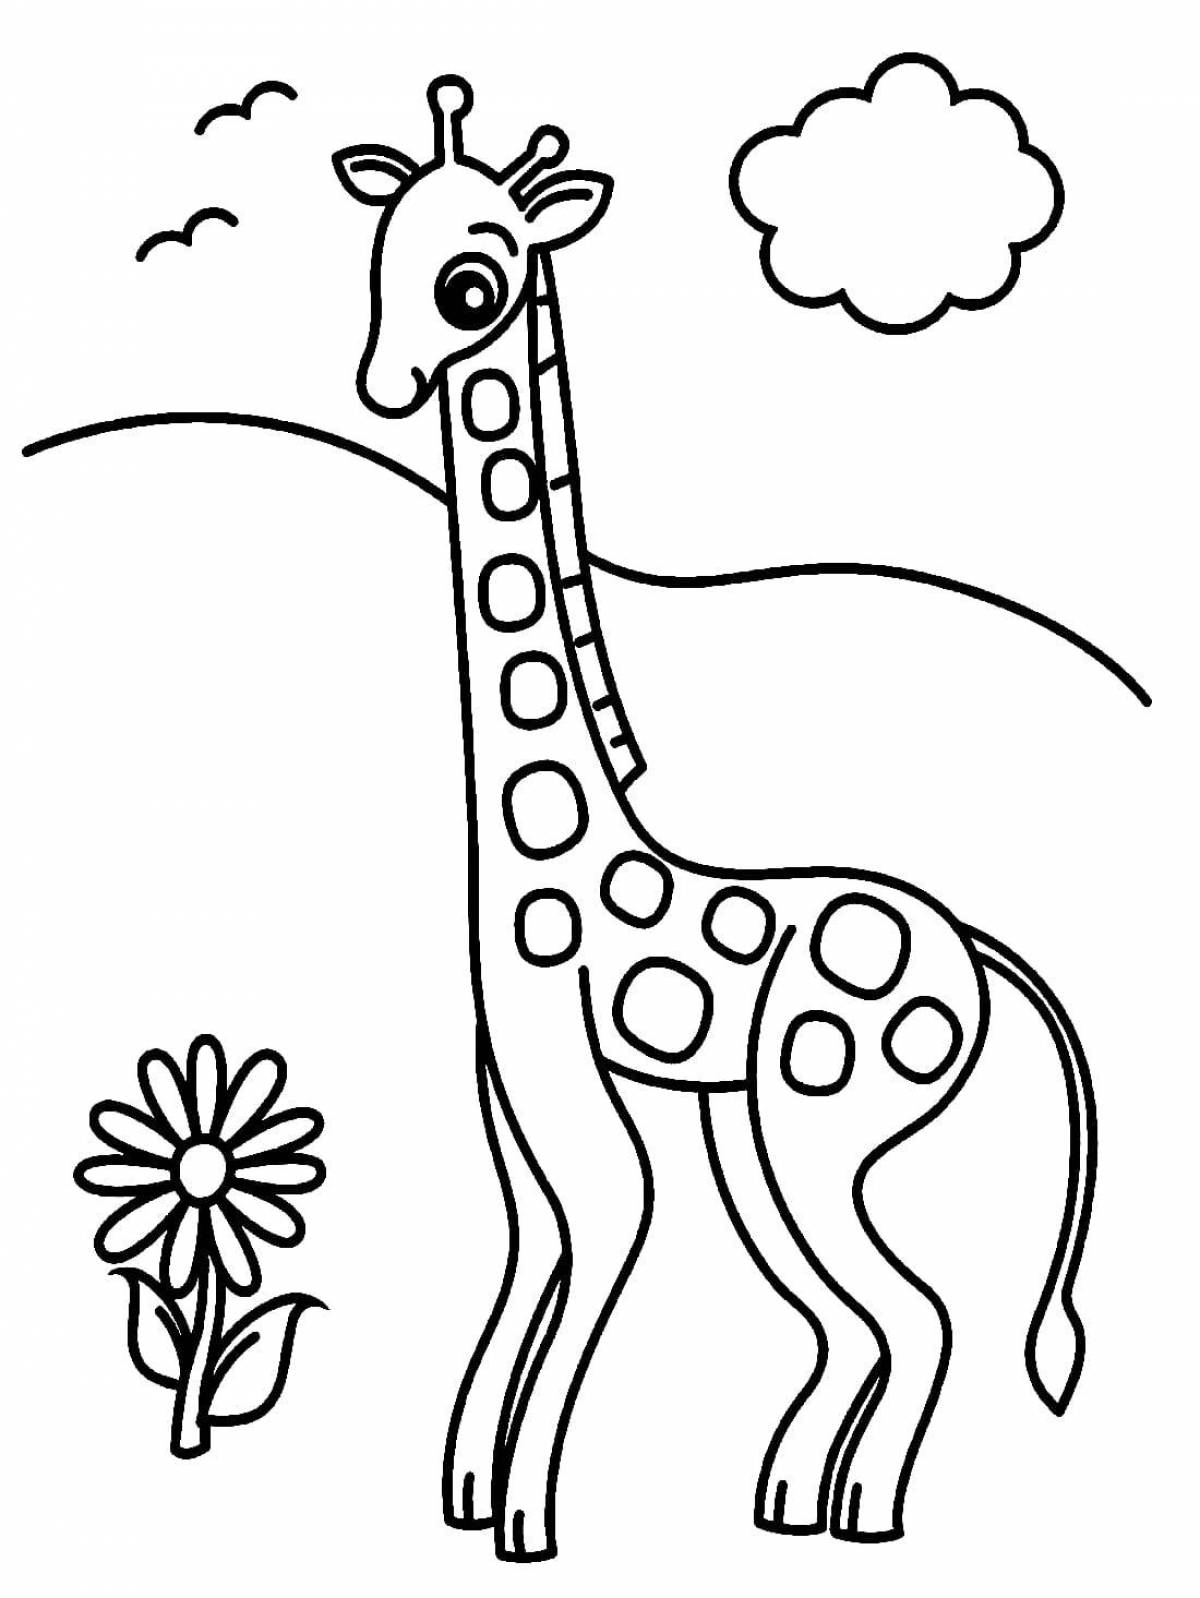 Веселый жираф раскраски для детей